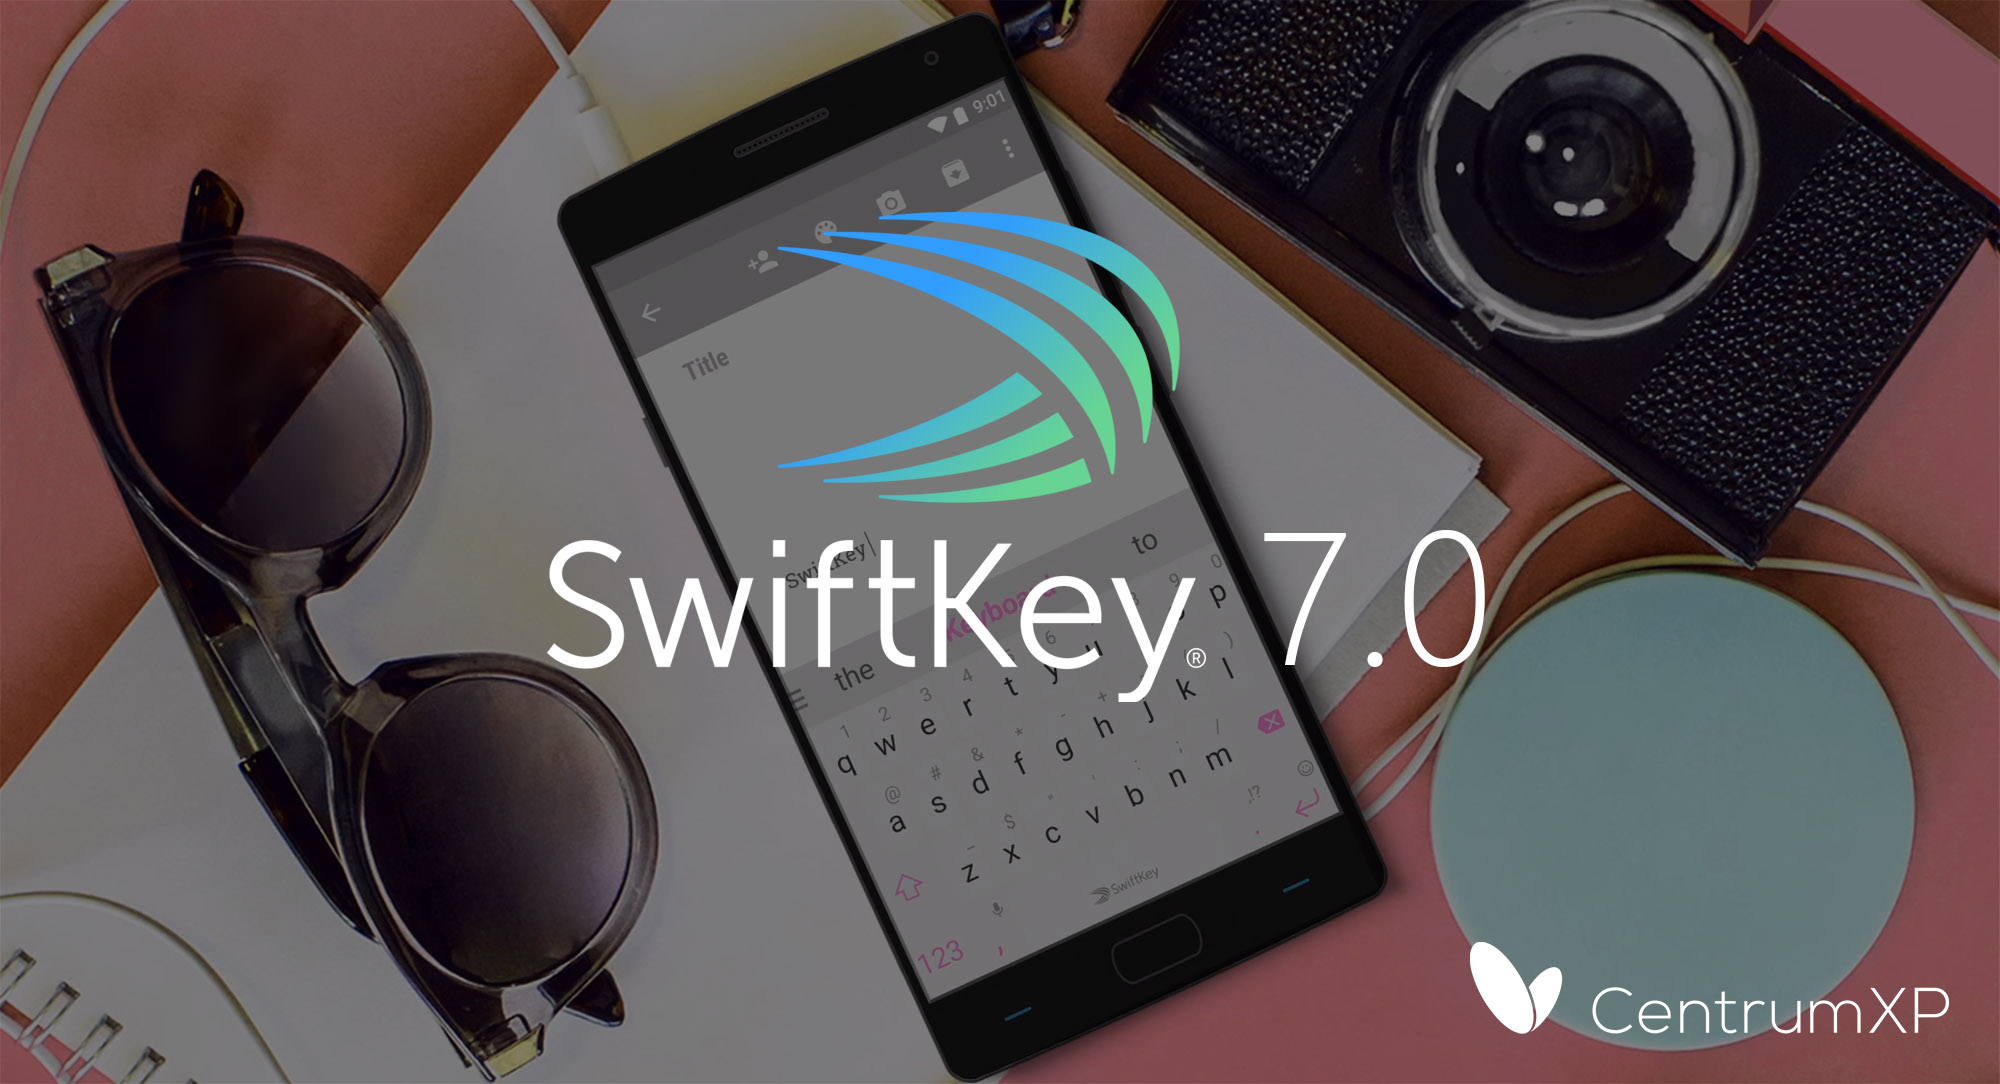 Swiftkey 7.0